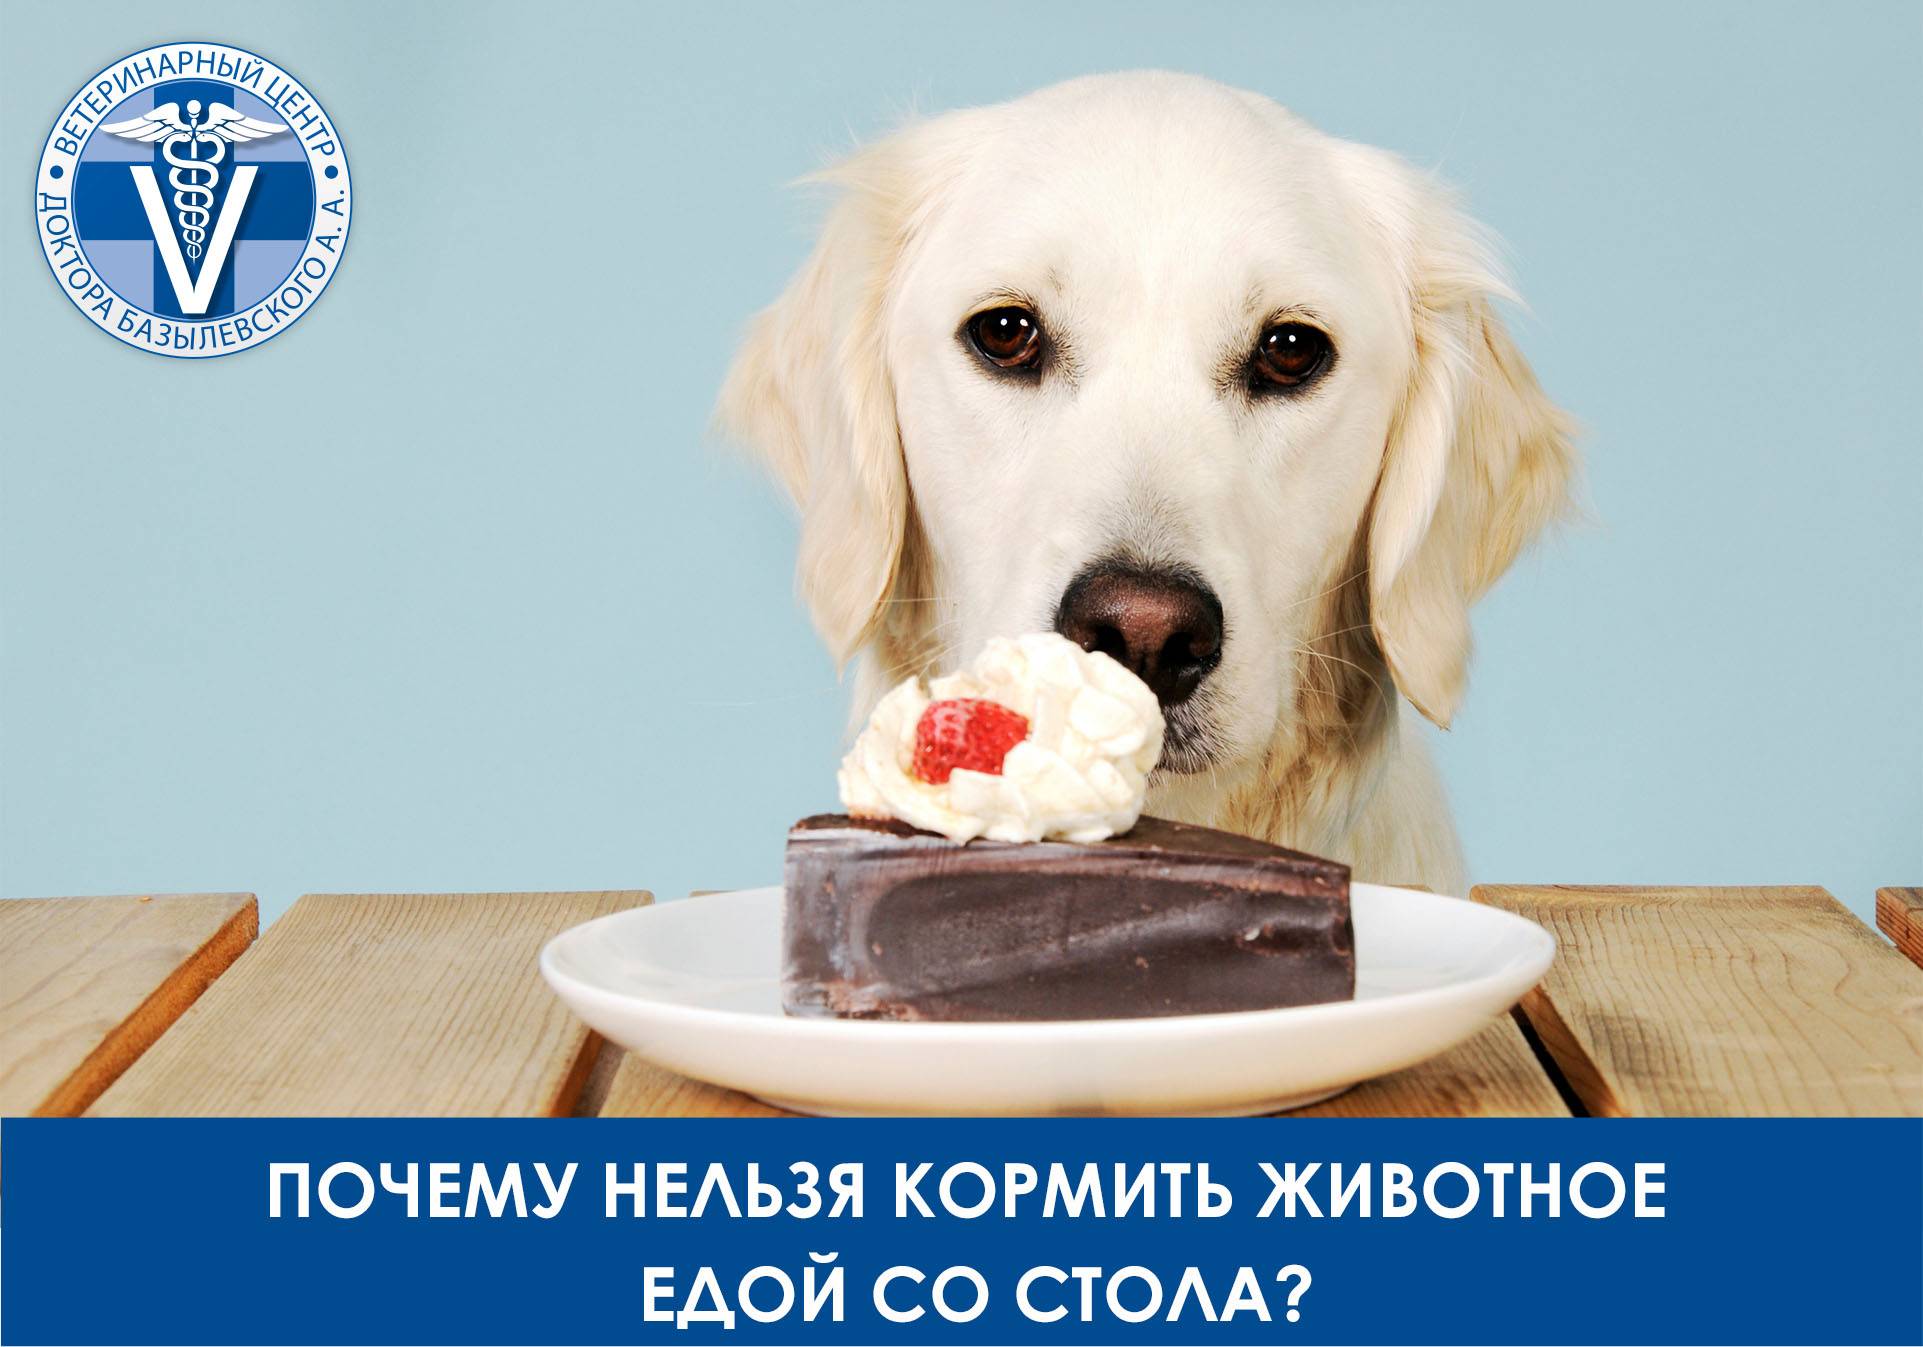 Чем нельзя кормить собаку: список запрещенных продуктов, что категорически нельзя давать собакам из еды